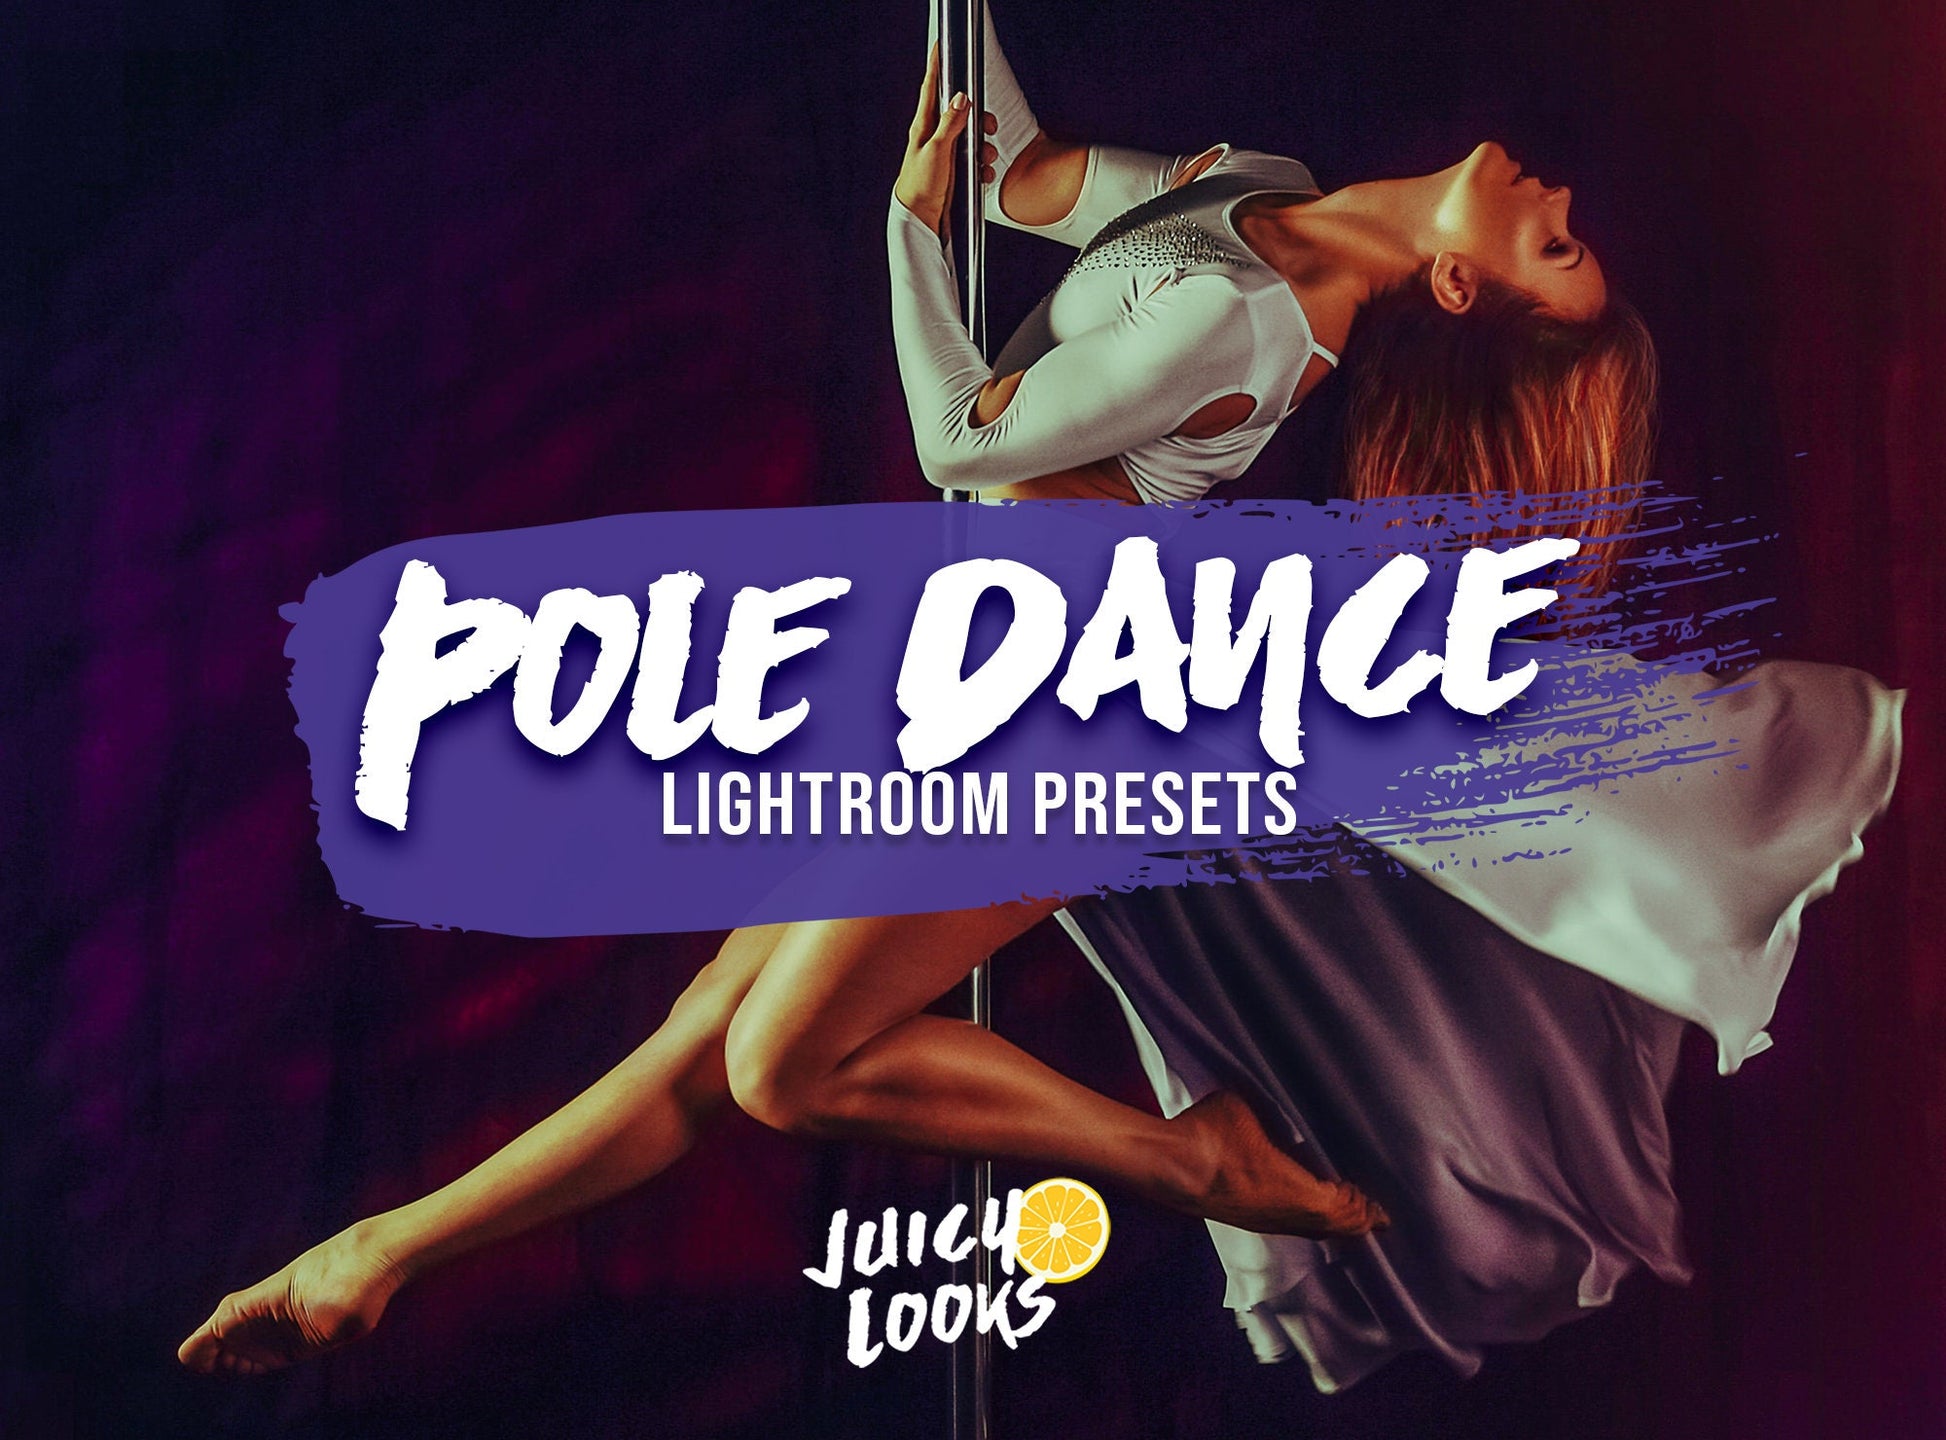 Pole Dance Lightroom Presets for Mobile & Desktop - Juicy Looks Presets